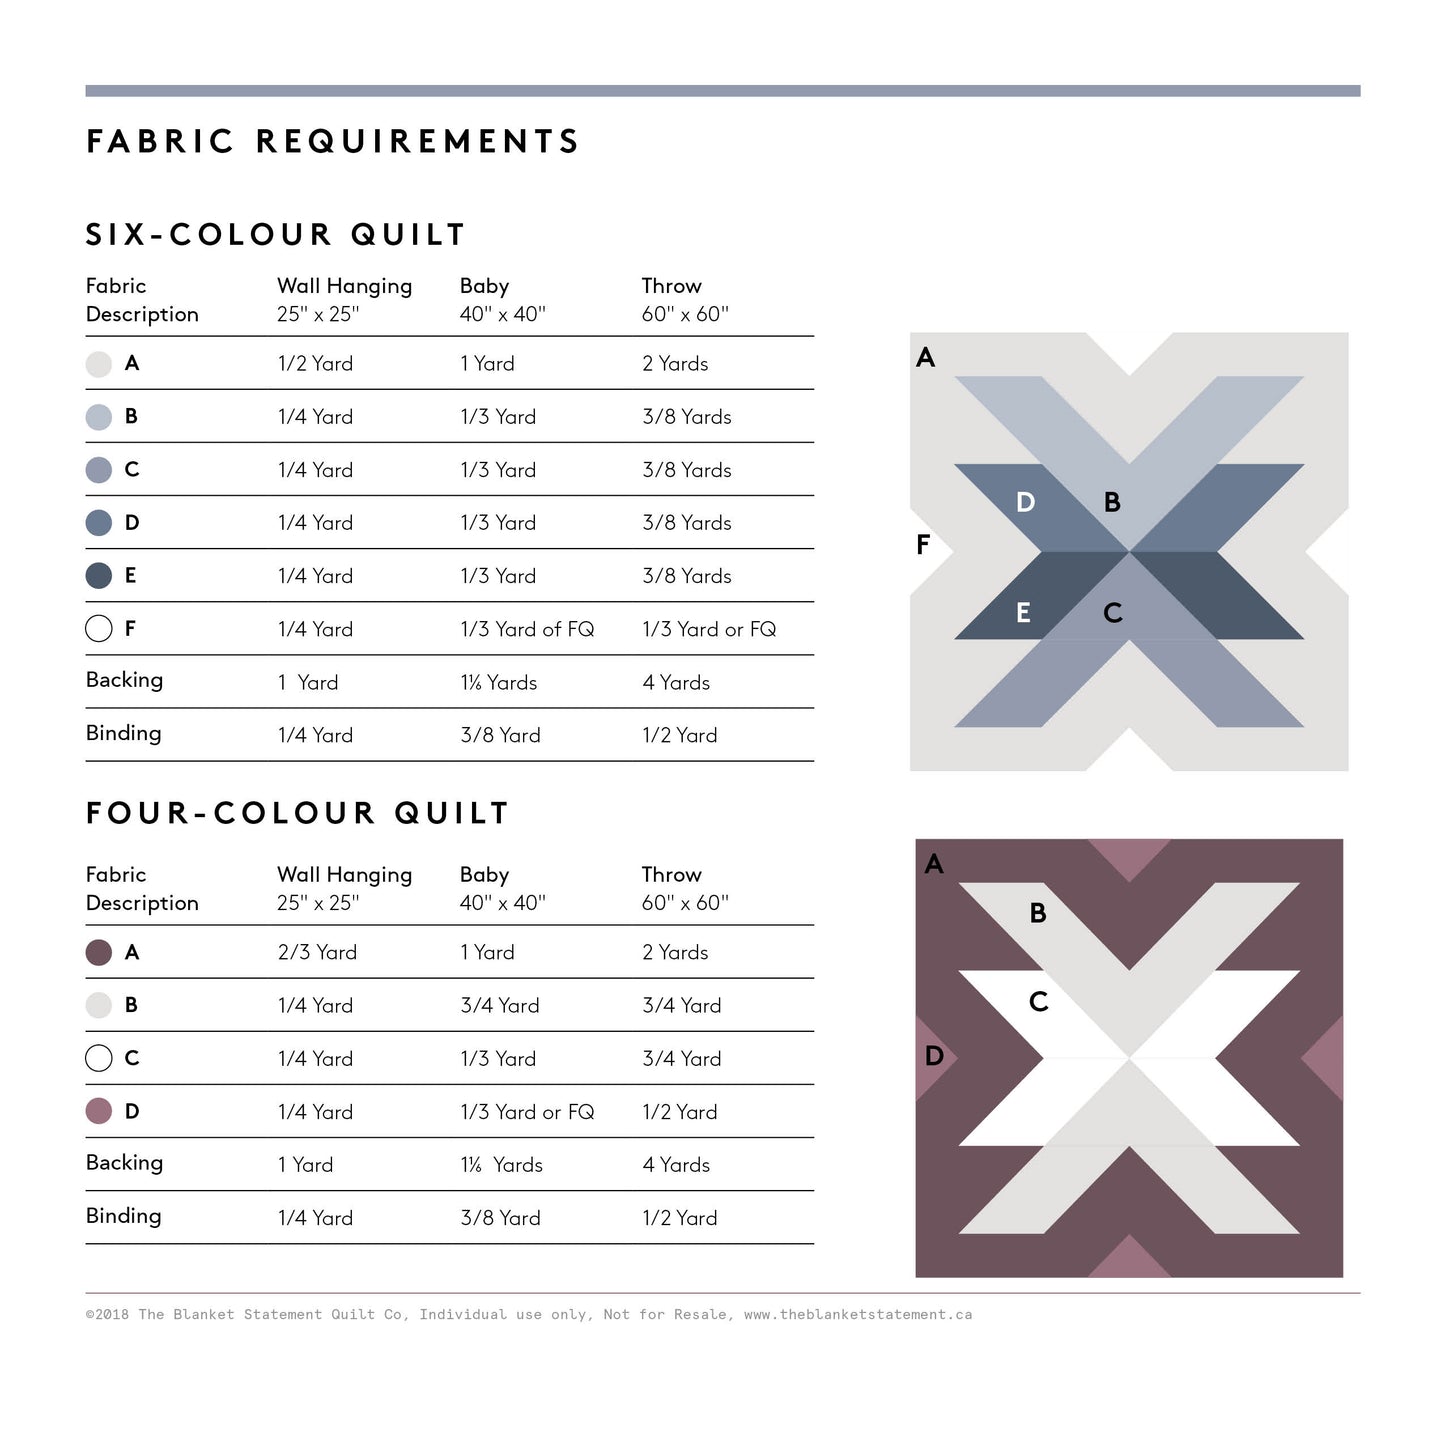 Cross Lake PDF Pattern